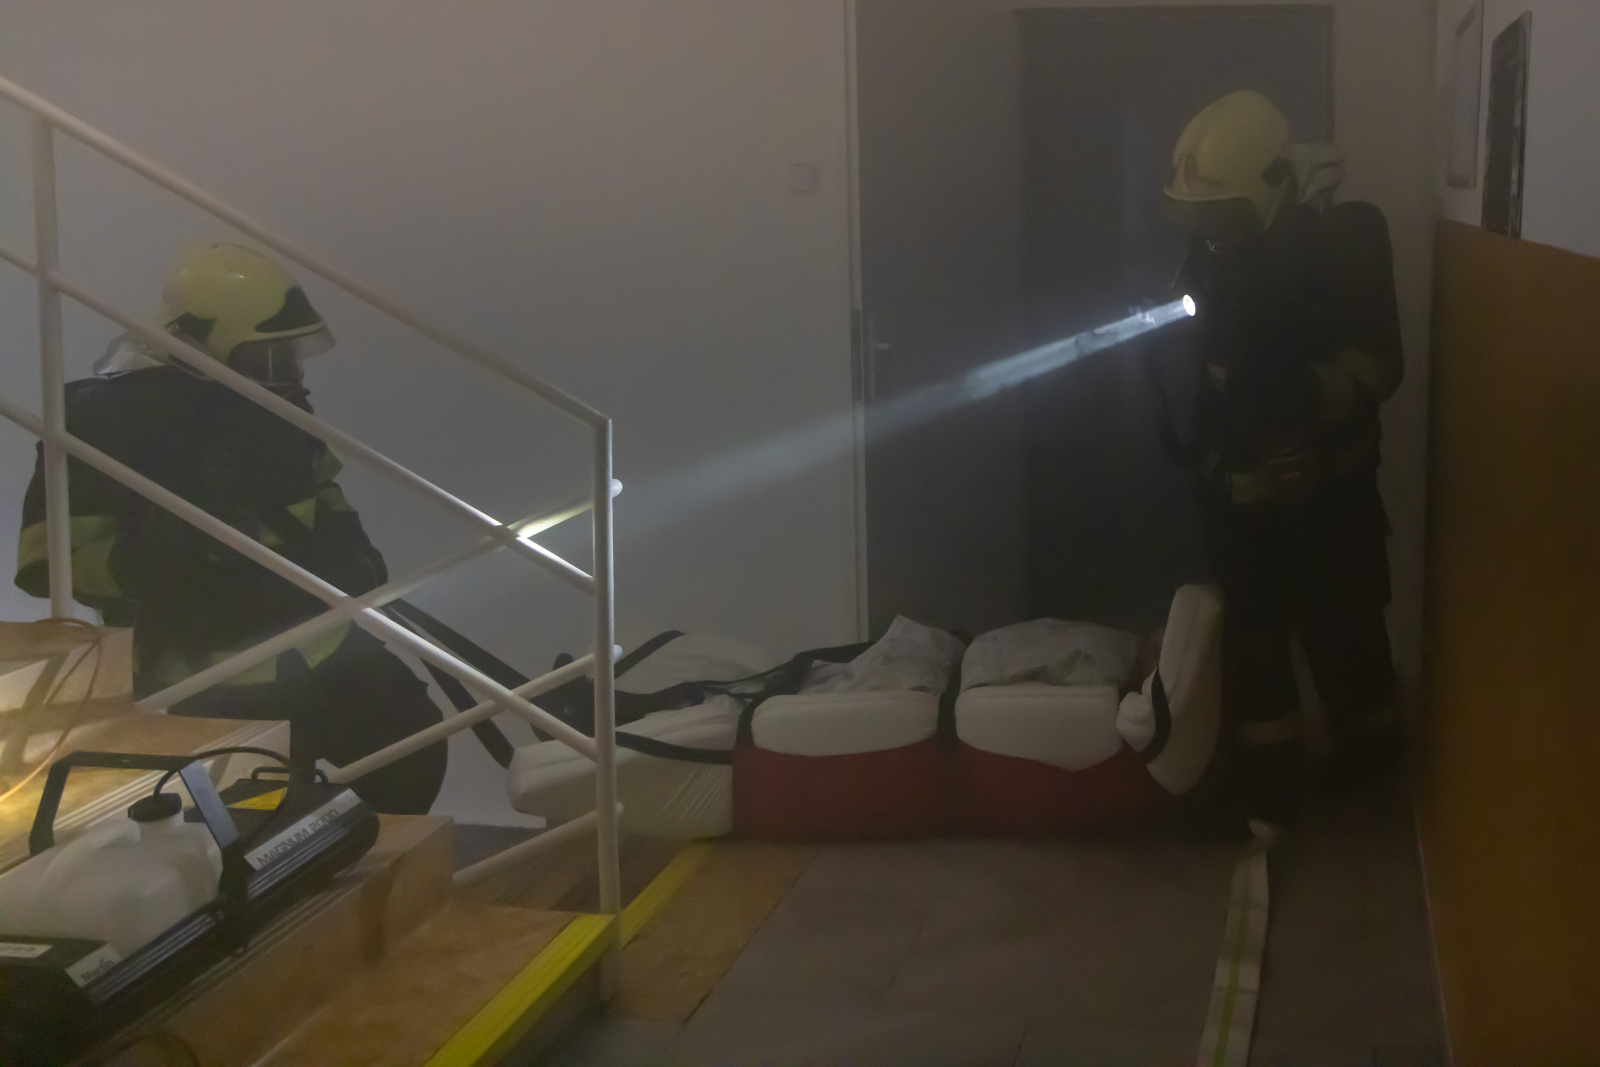 090-Evakuace imobilních pacientů při cvičném požáru v říčanské nemocnici.jpg